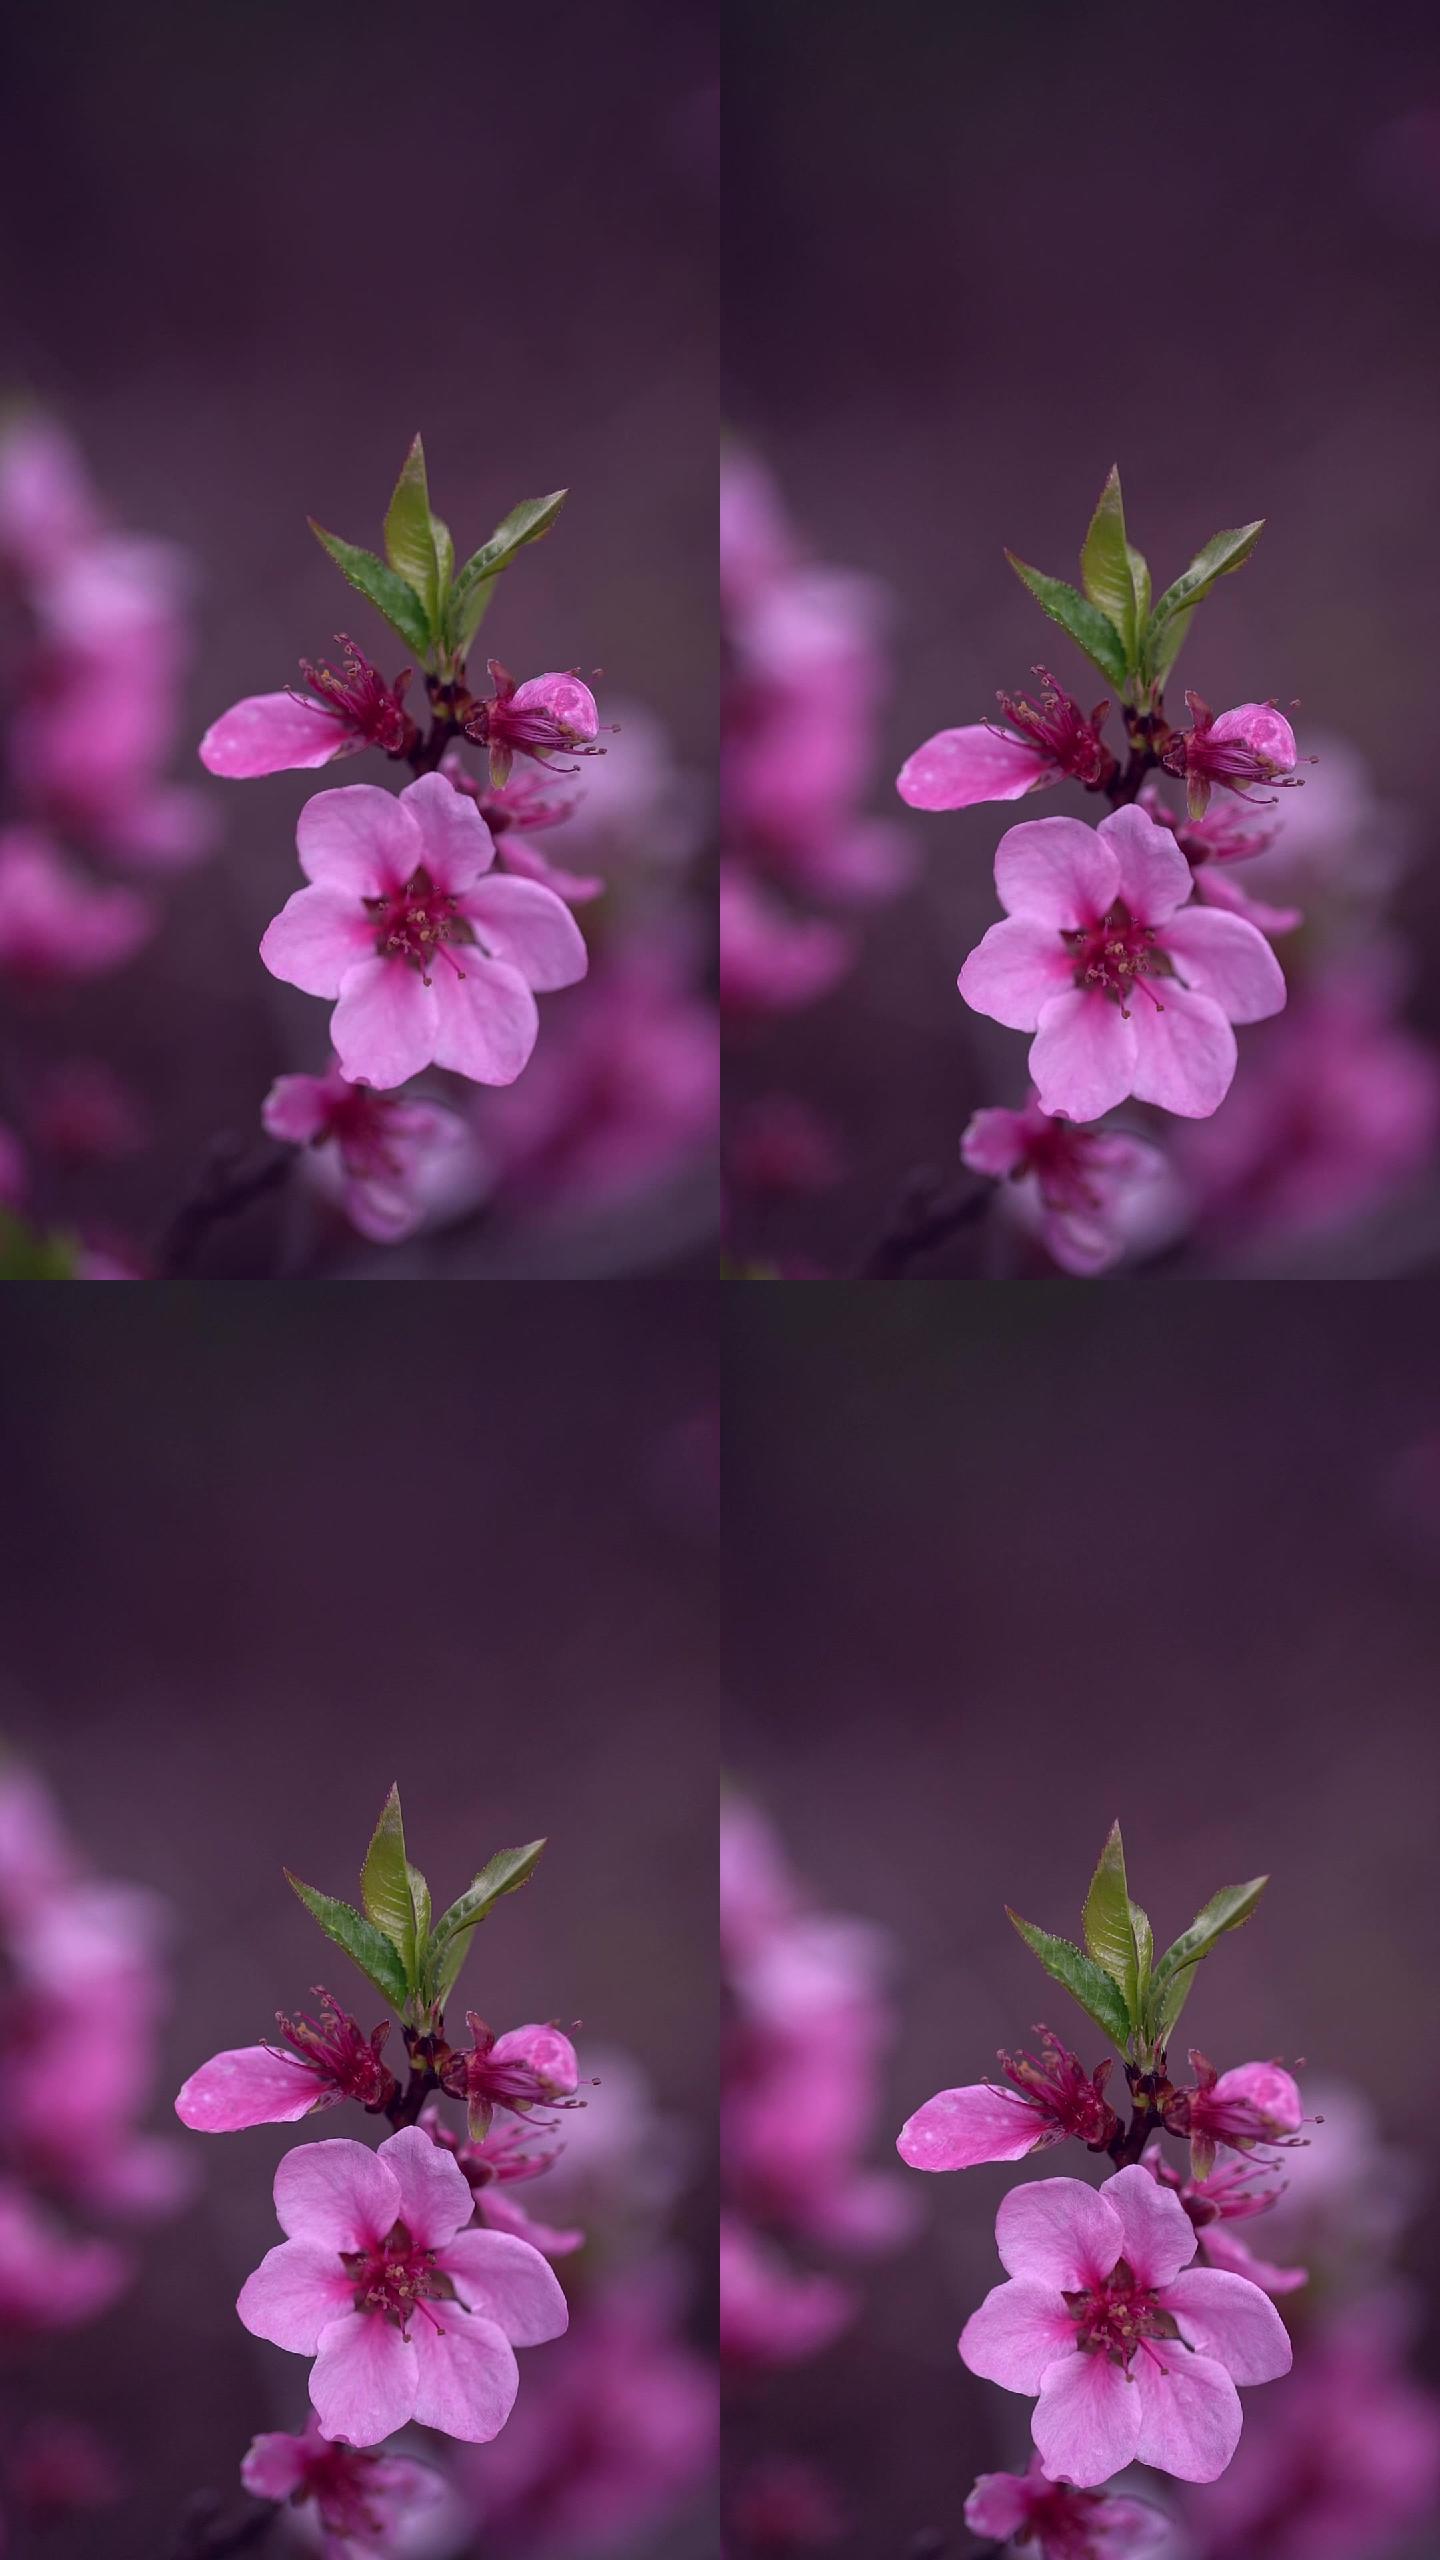 背景模糊的粉红色花朵